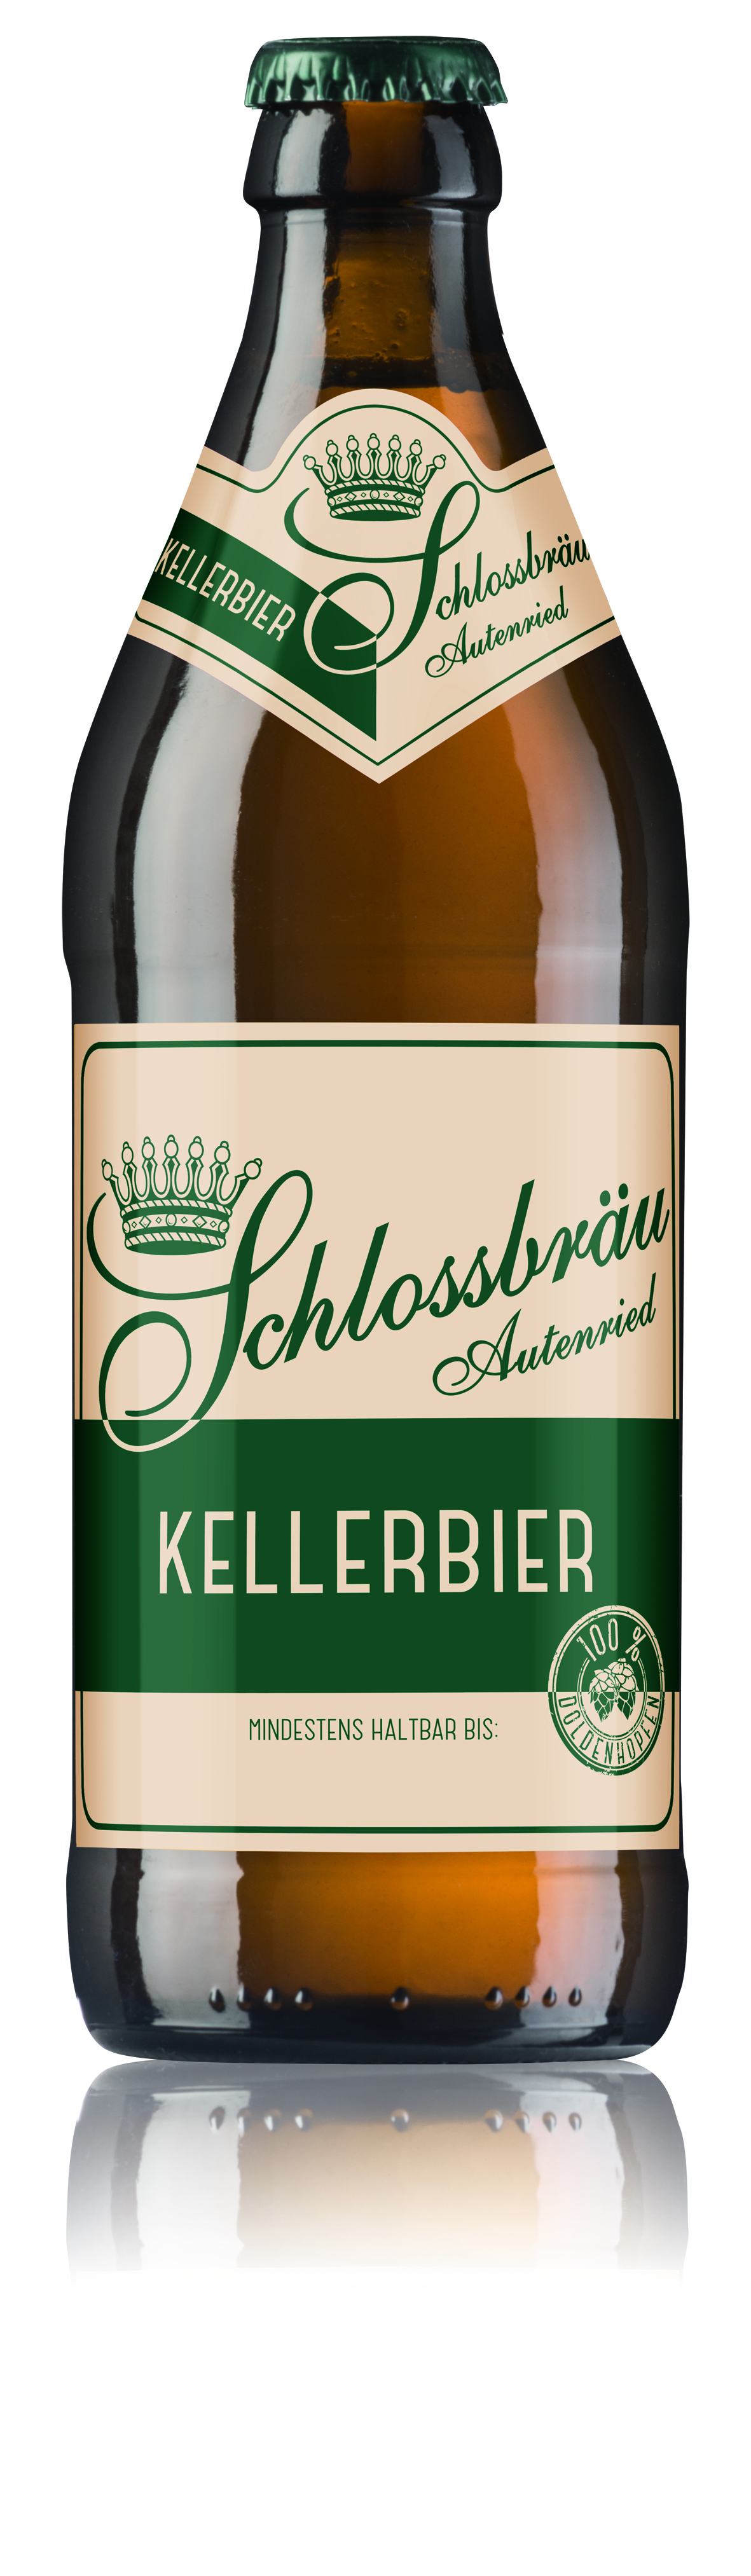 Schlossbrauerei Autenried - Schlossbräu Kellerbier